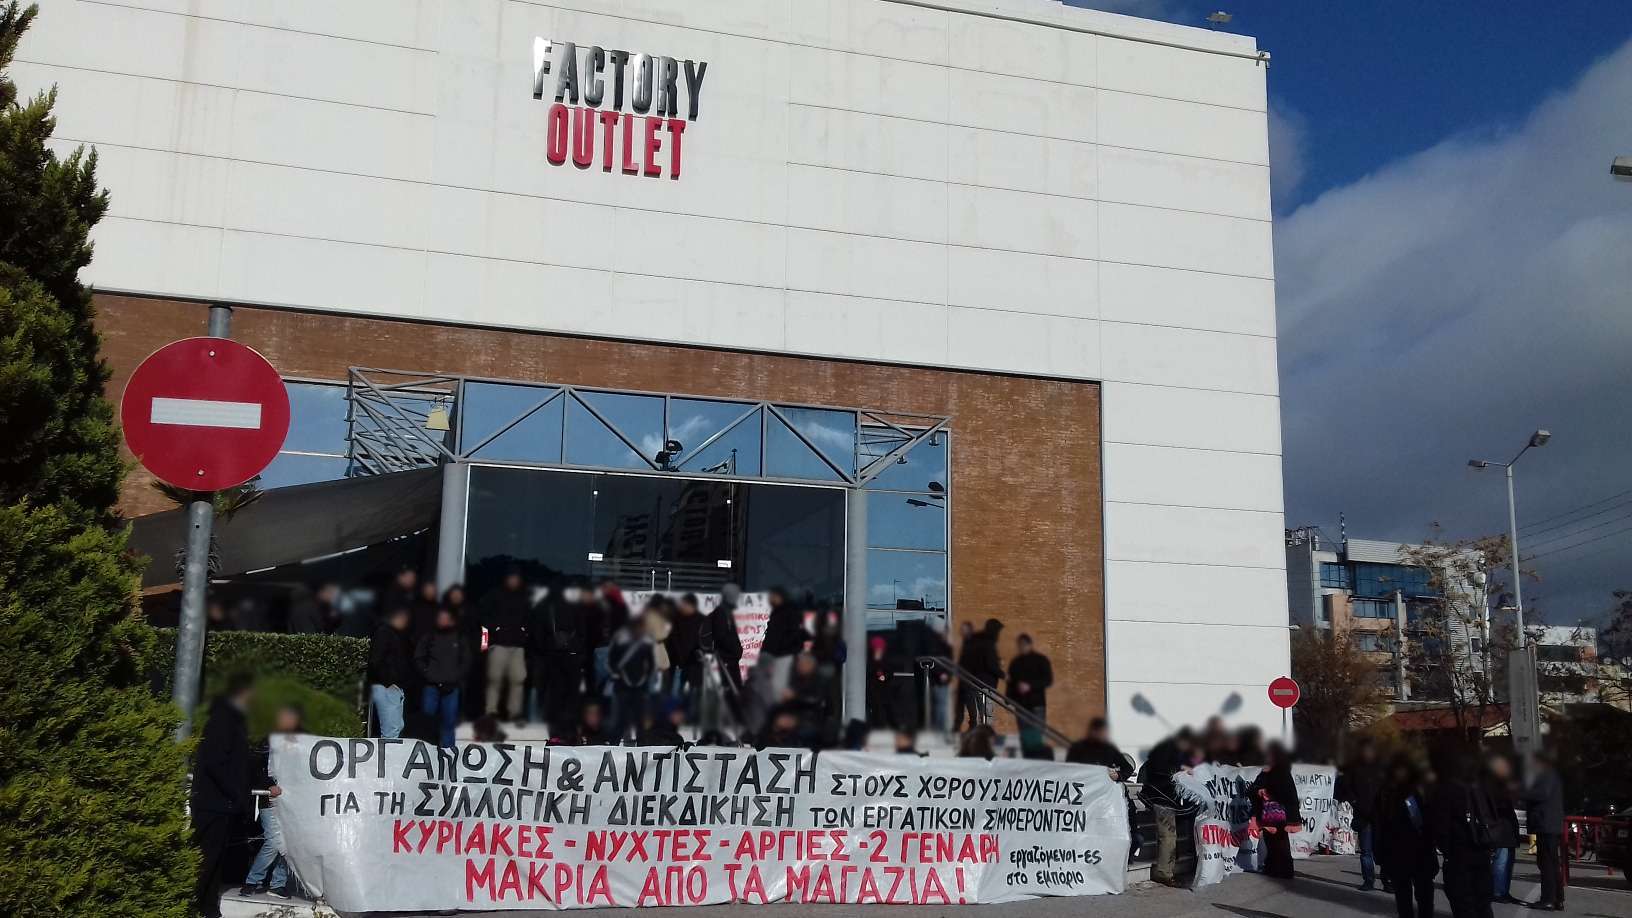 Αθήνα: Ανταπόκριση από την απεργιακή συγκέντρωση στο Factory Outlet, Κυριακή 14/01